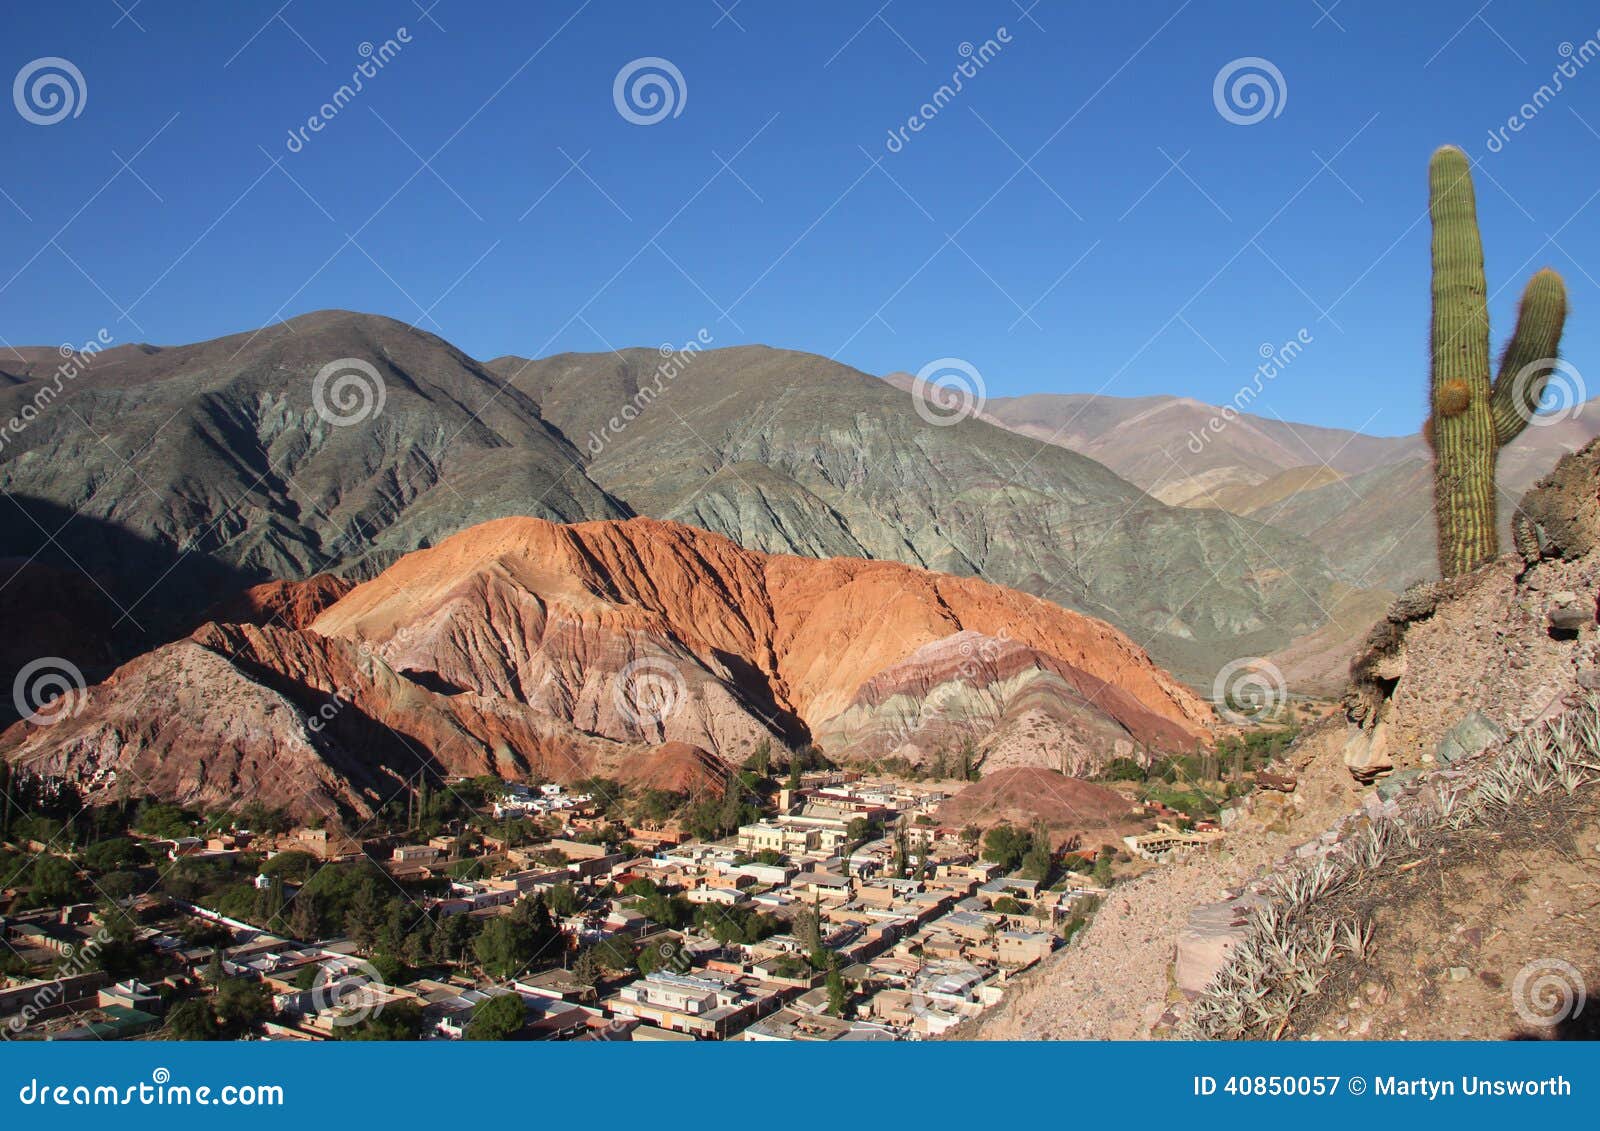 cerro de siete colores in northwest argentina